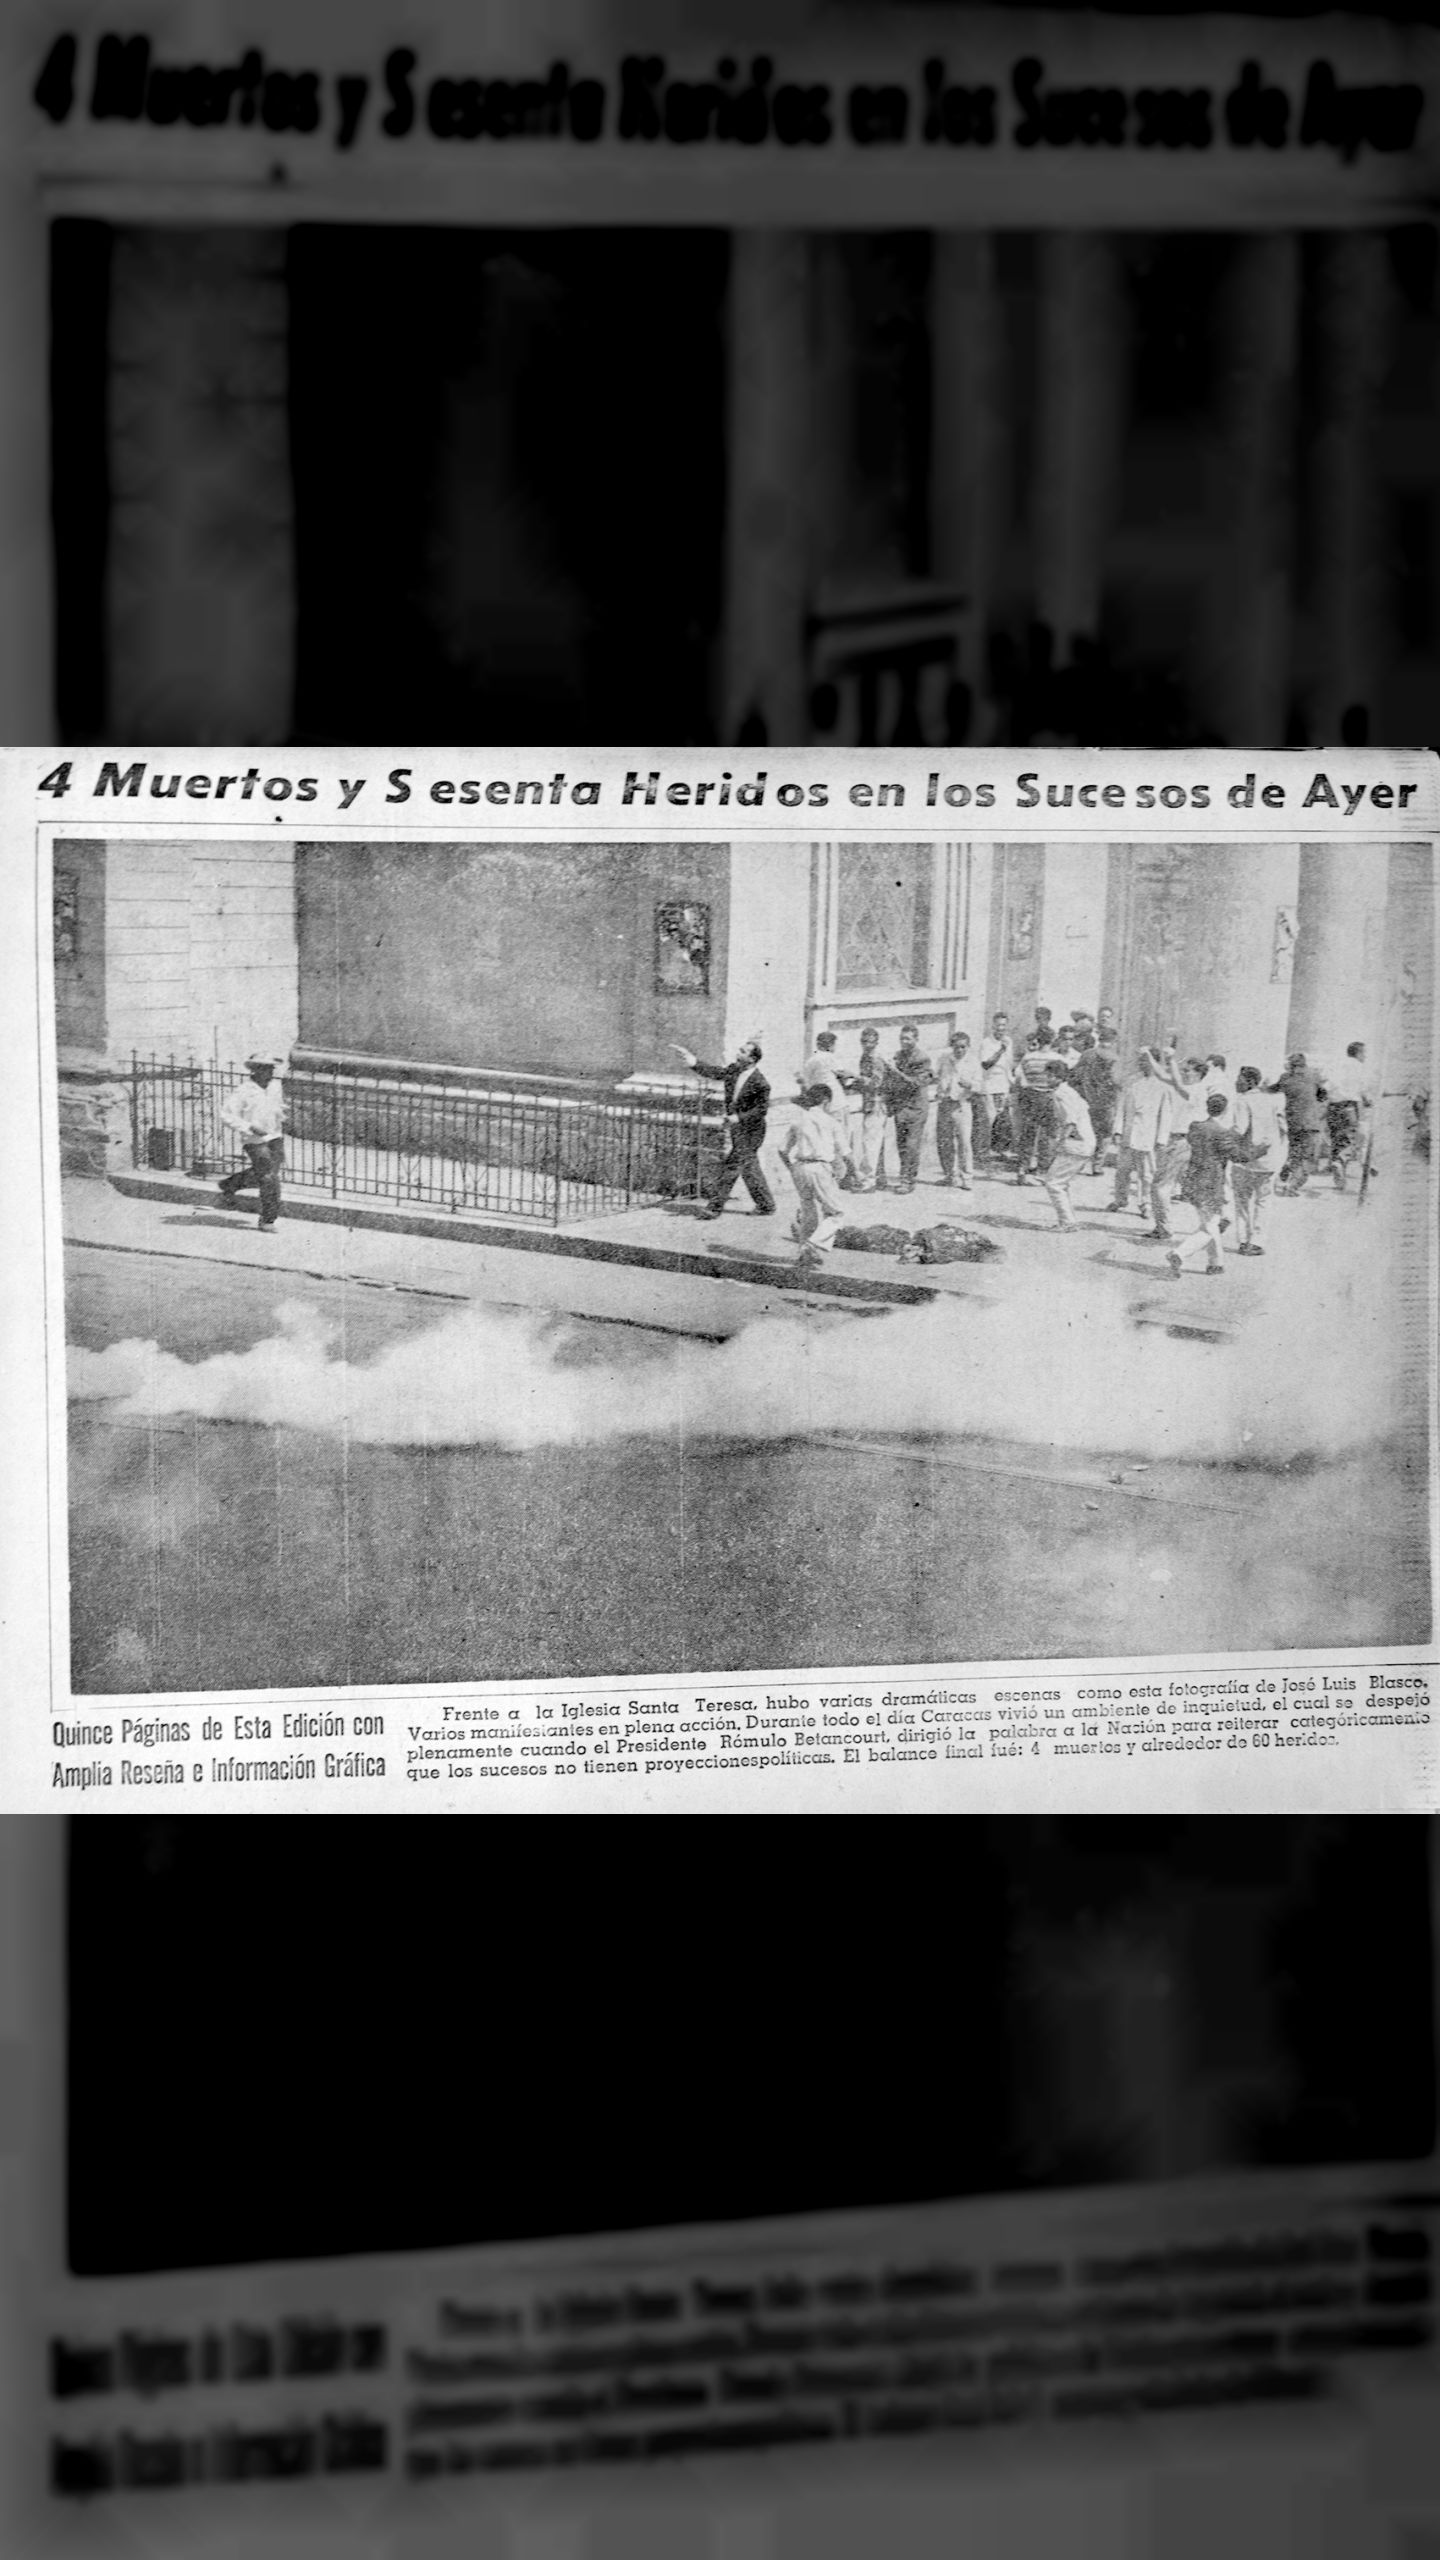 4 muertos y sesenta heridos en los sucesos de ayer (Últimas Noticias, 05 de agosto 1960)